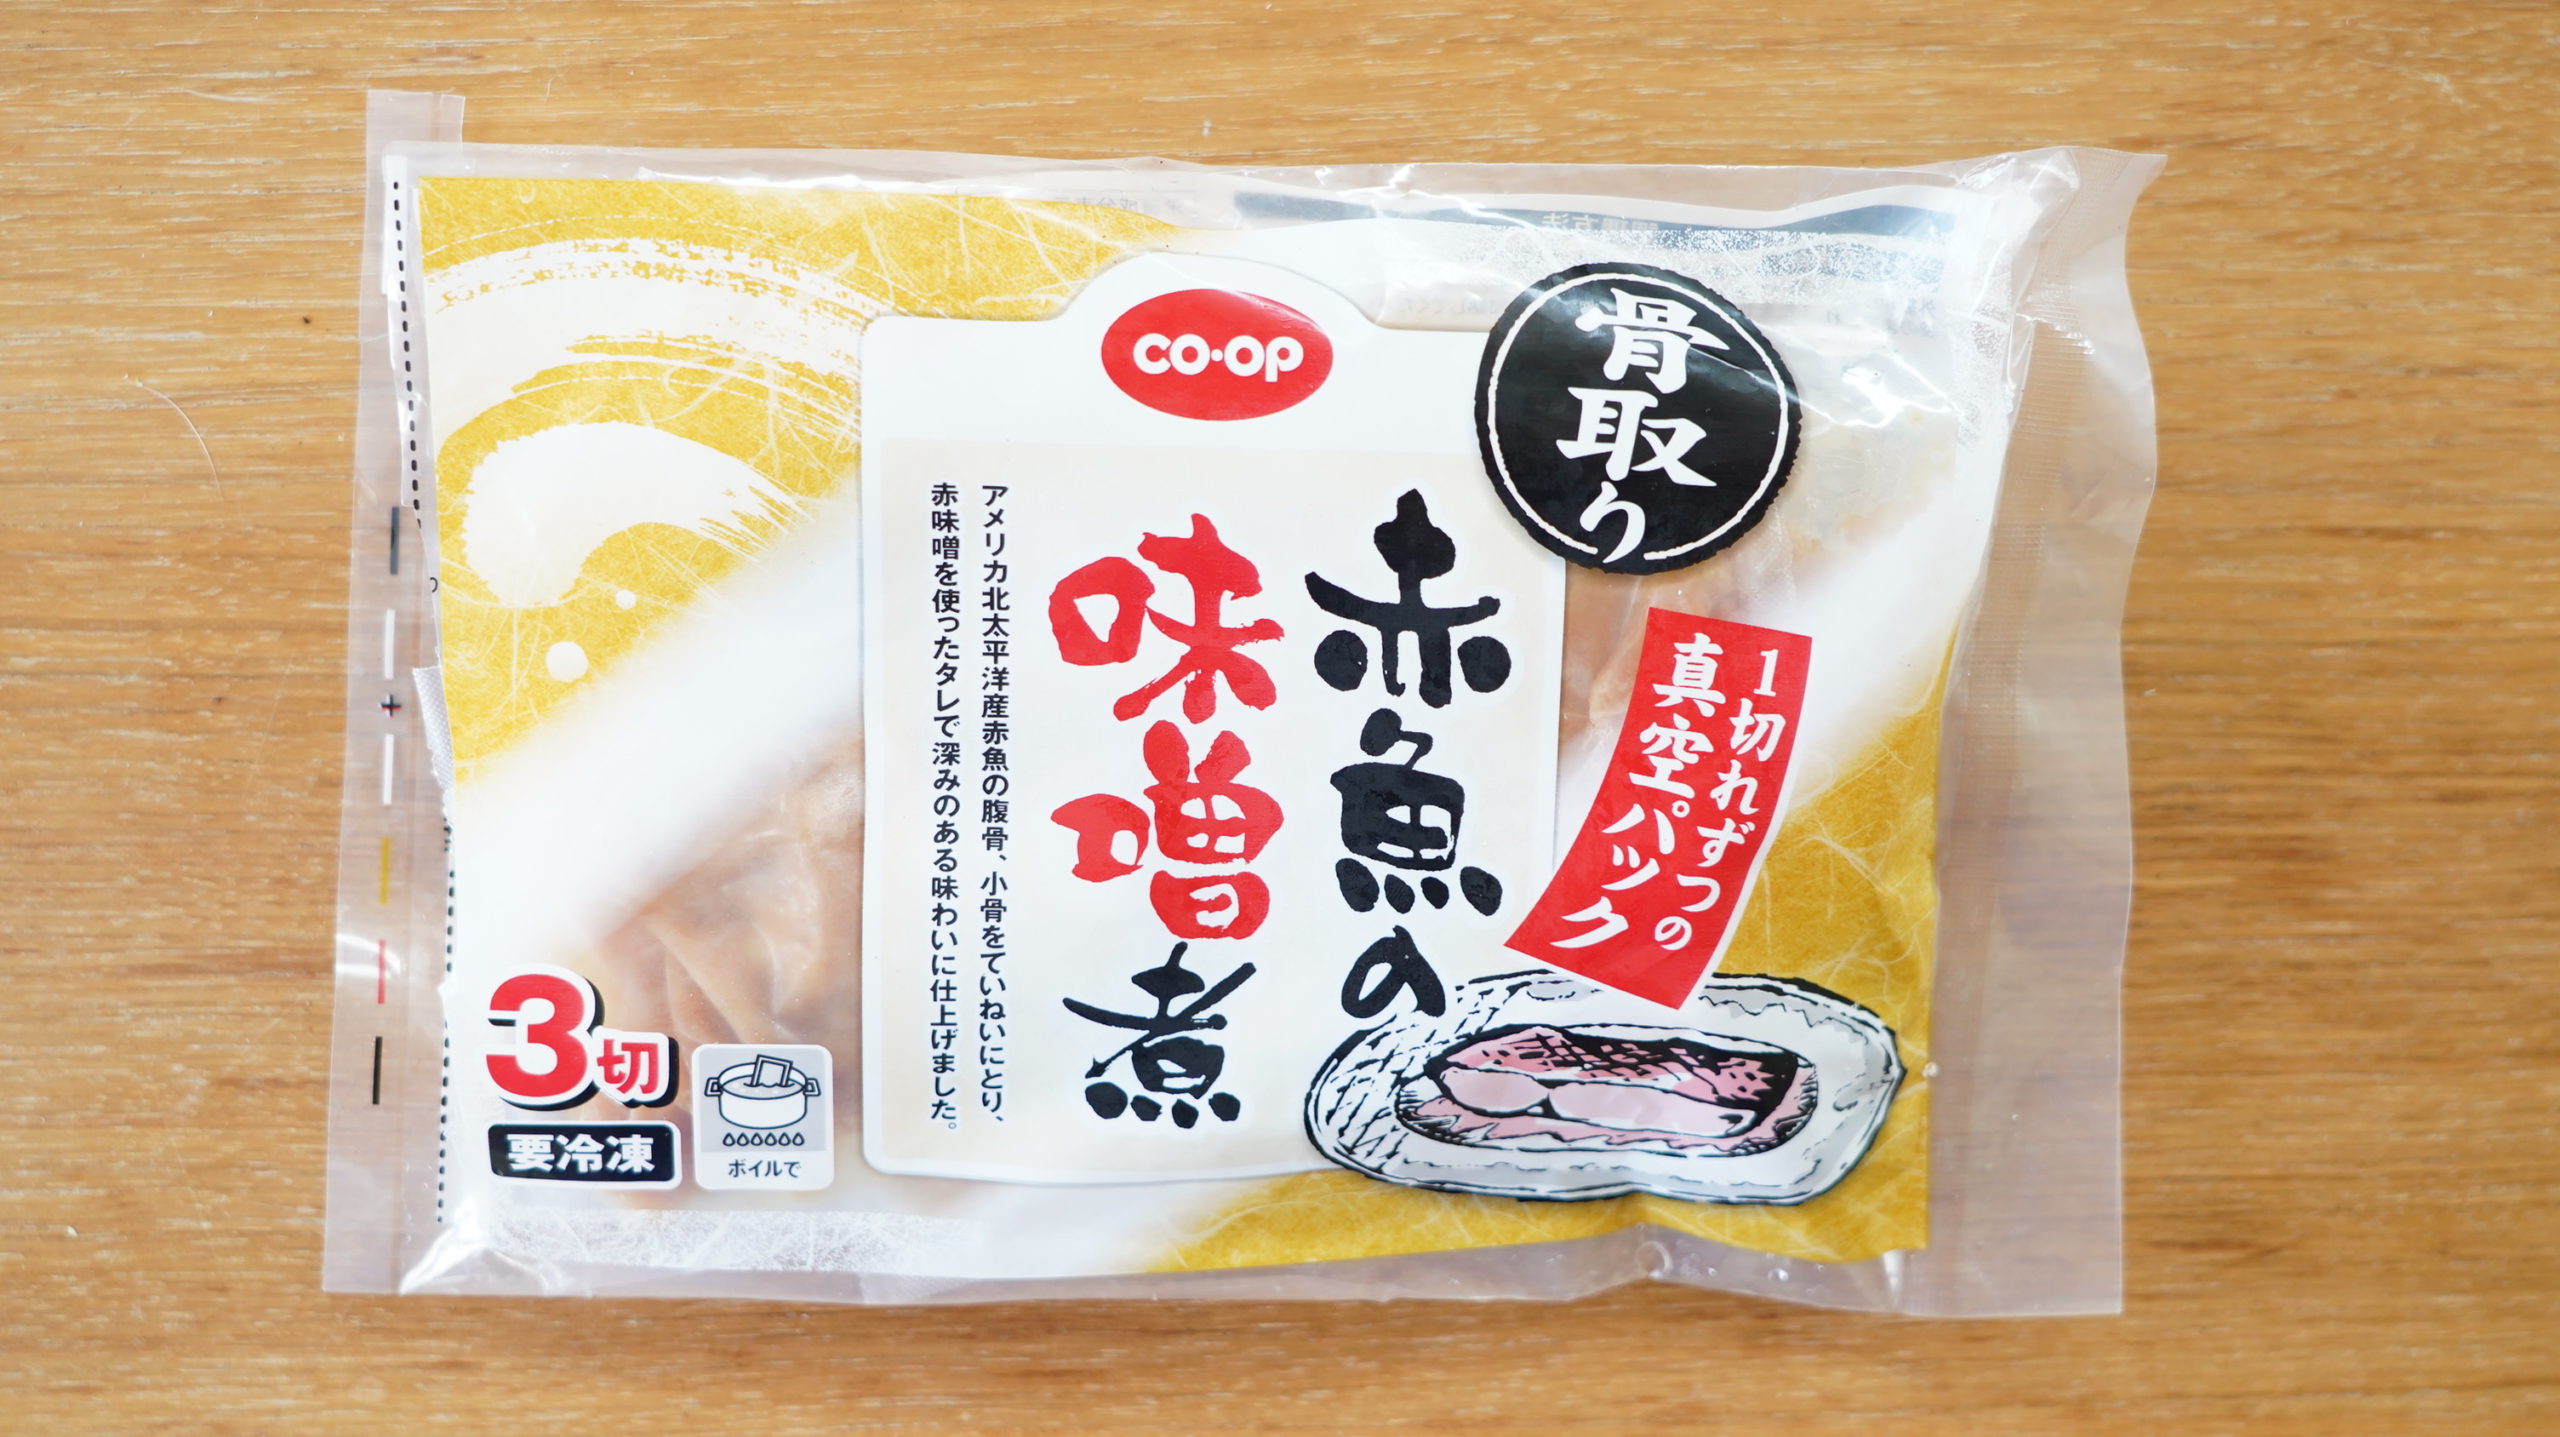 生協coop宅配の冷凍食品「赤魚の味噌煮」のパッケージ写真